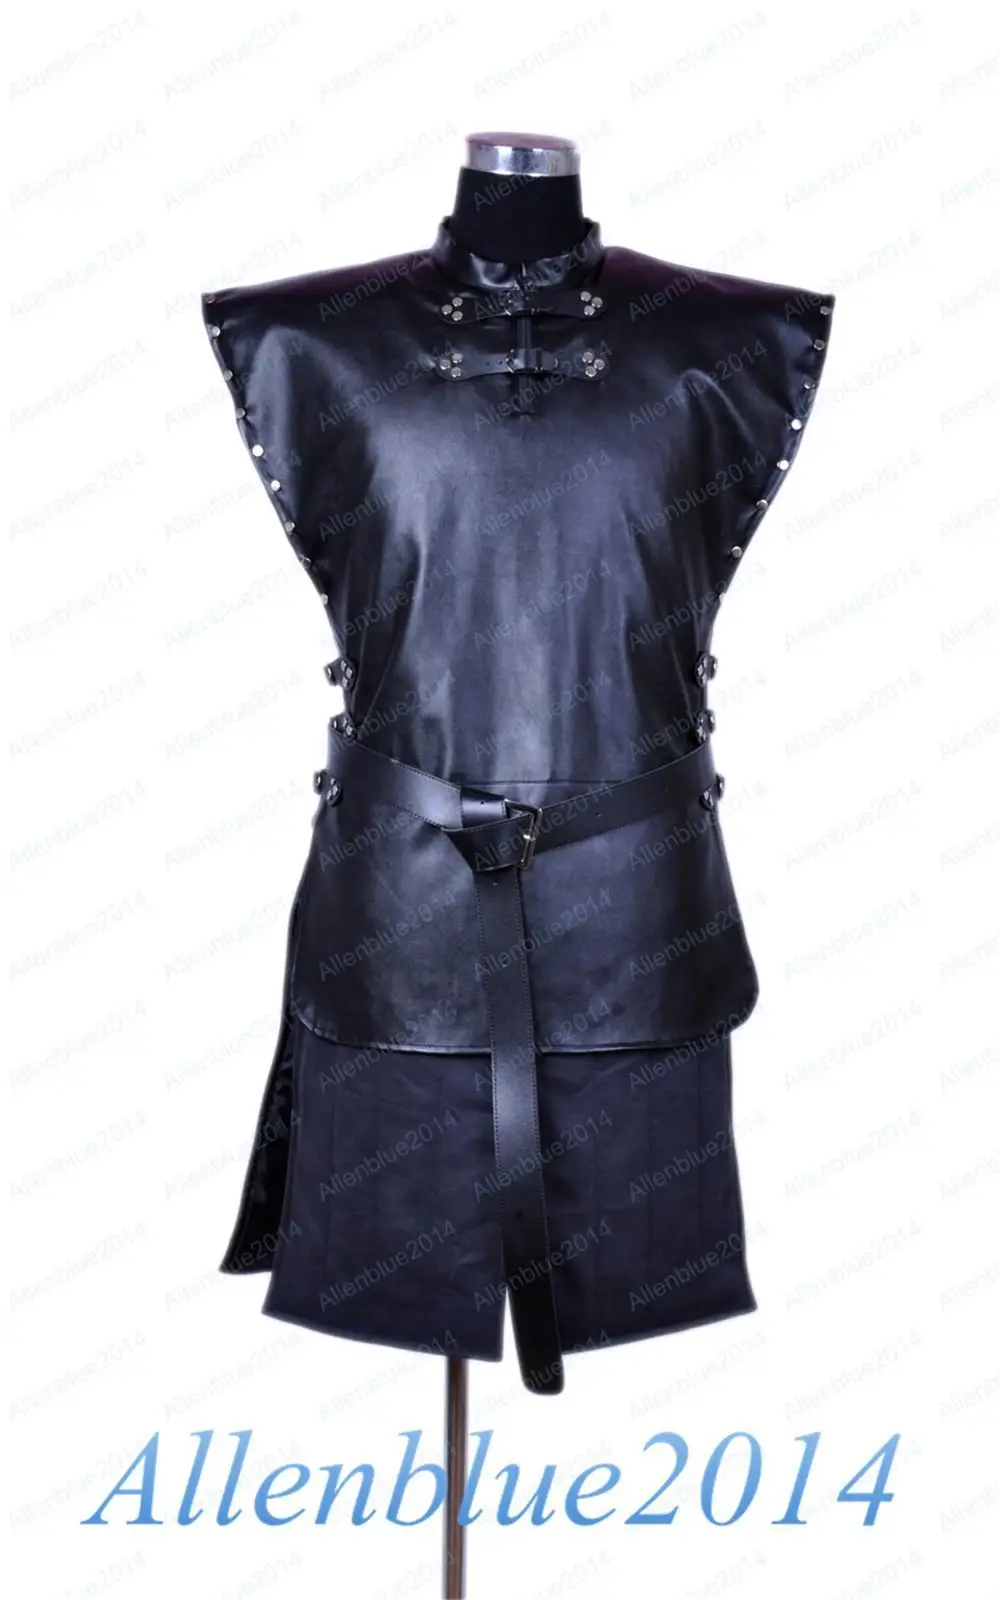 Игра престолов Джон Сноу Косплей необычный костюм мужской меховой плащ куртка пальто наряды халат